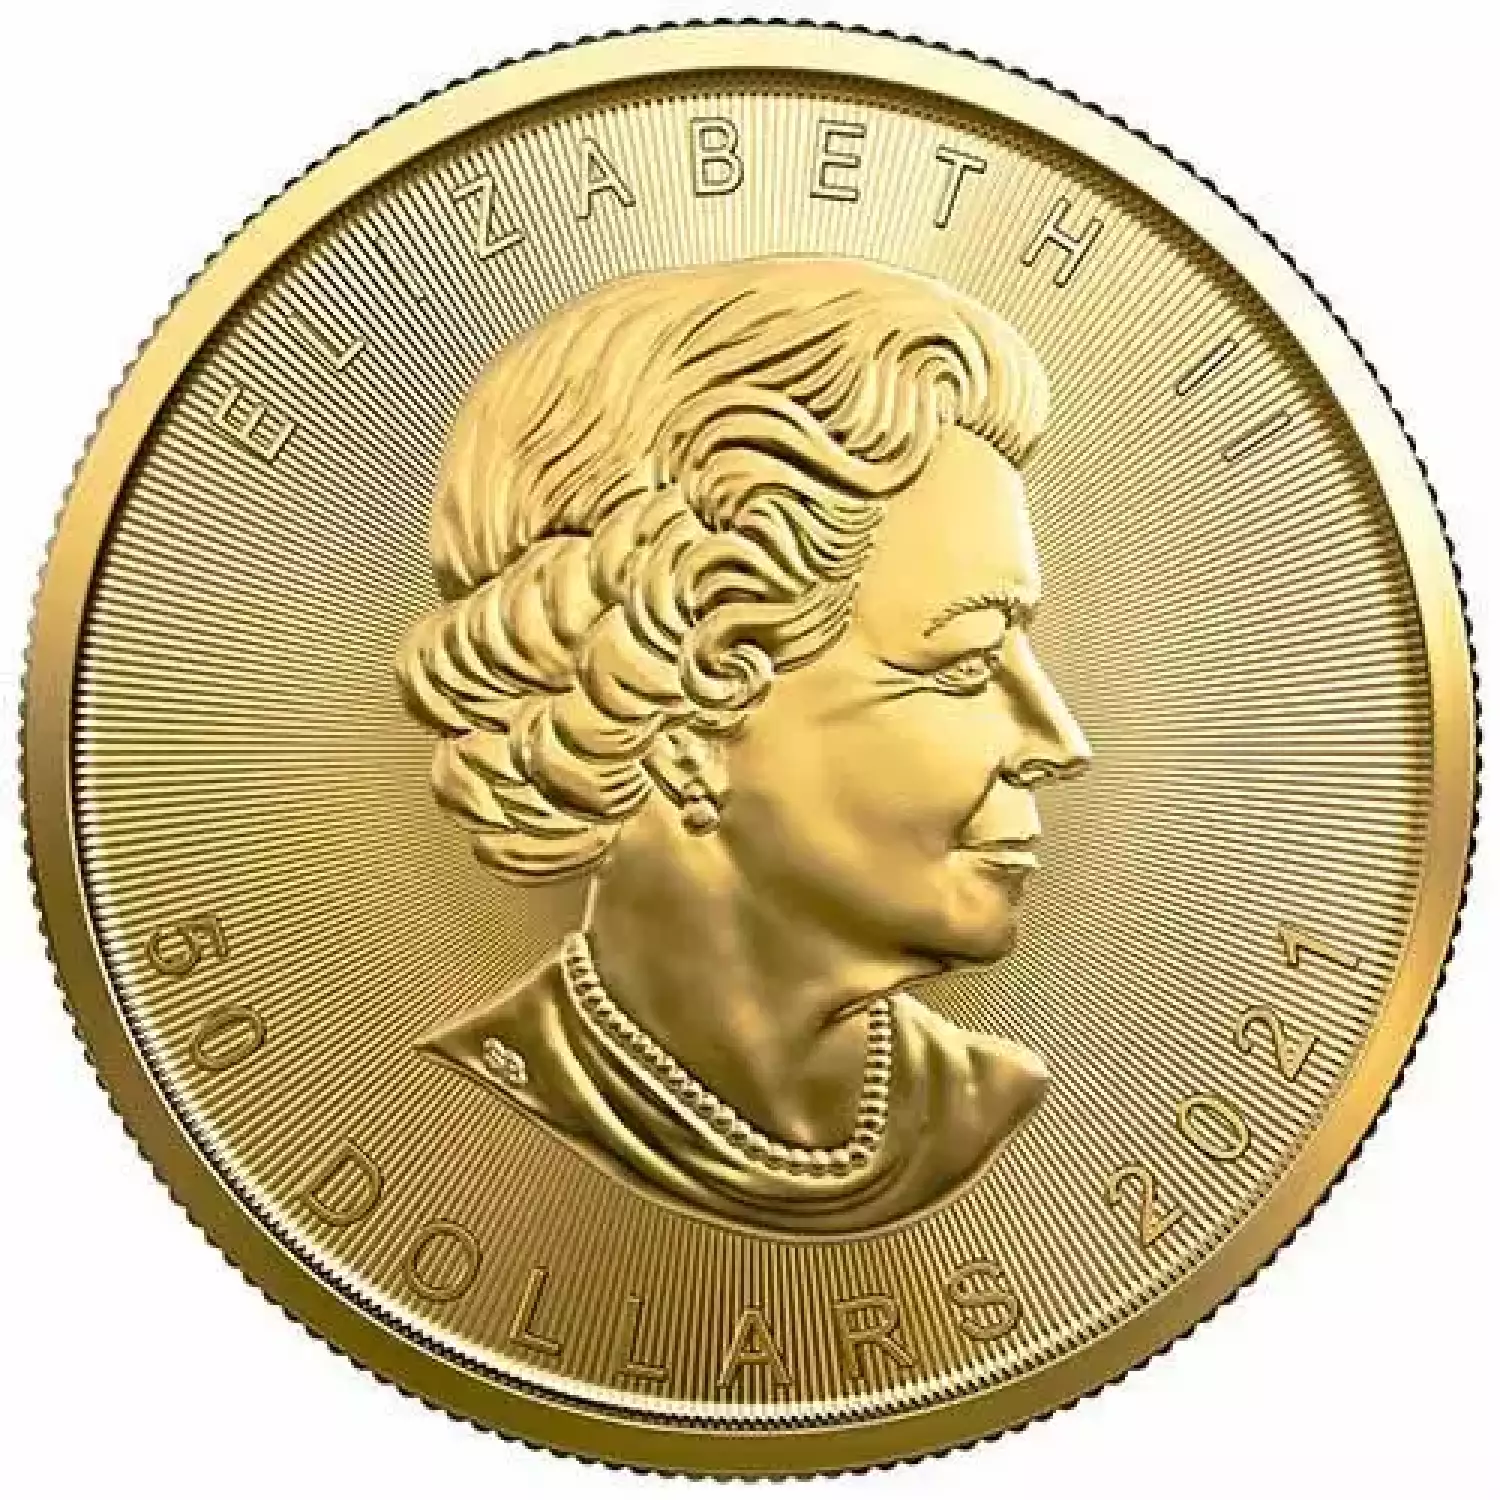 2021 1 oz Canadian Gold Maple Leaf Coin (BU)